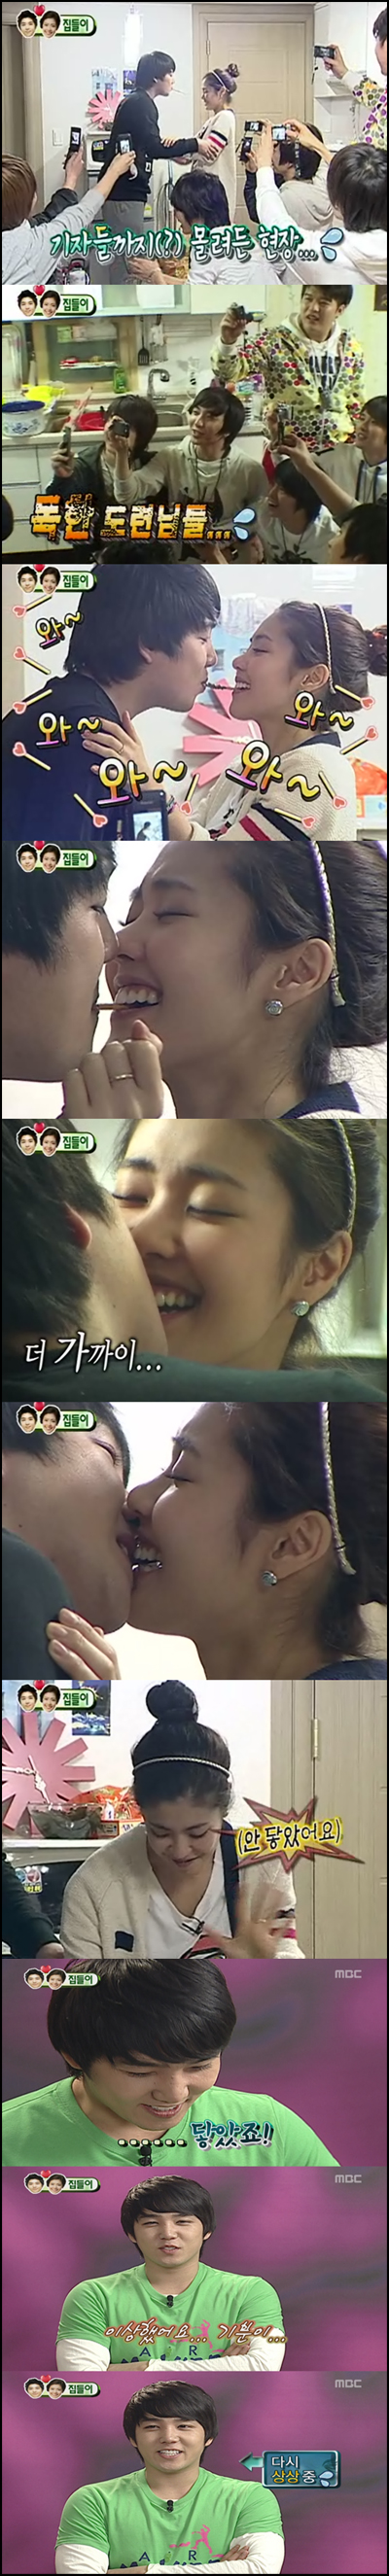 Kangin&Yunji KISS :D